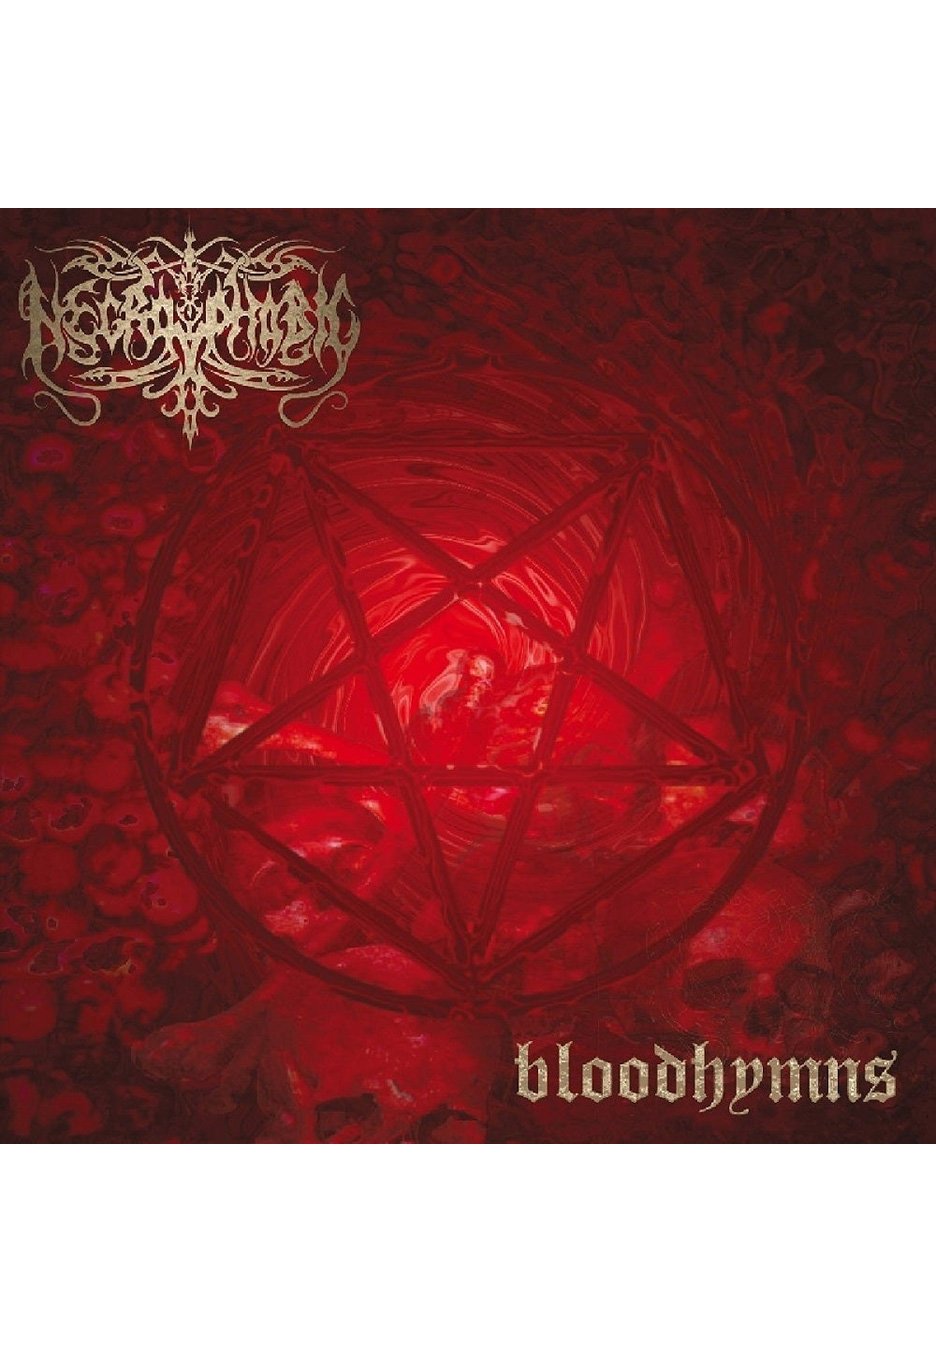 Necrophobic - Bloodhymns (Re-Issue 2022) - Vinyl